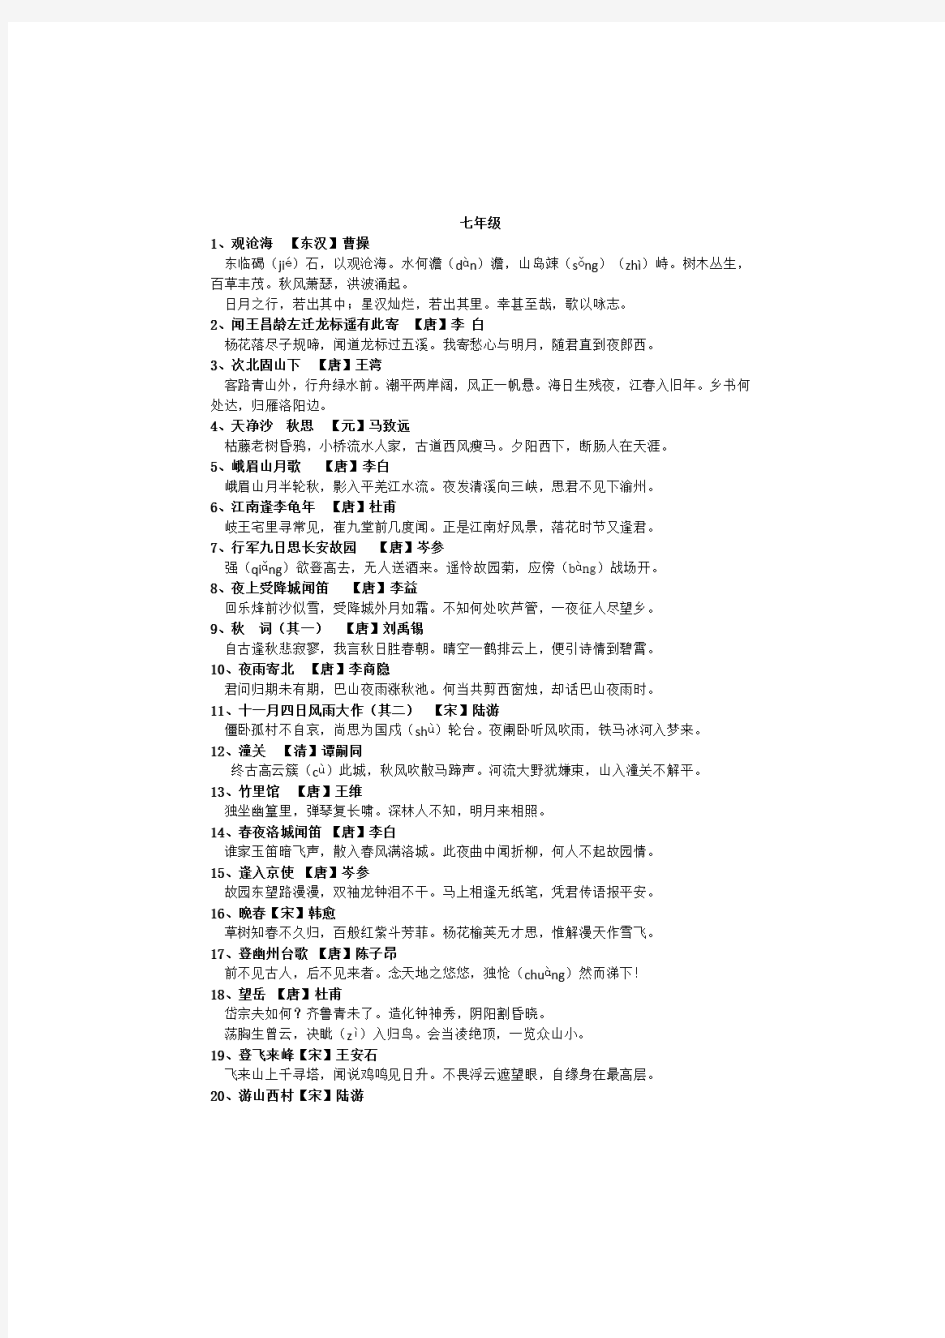 初中语文所有古诗词总结梳理(共84首)